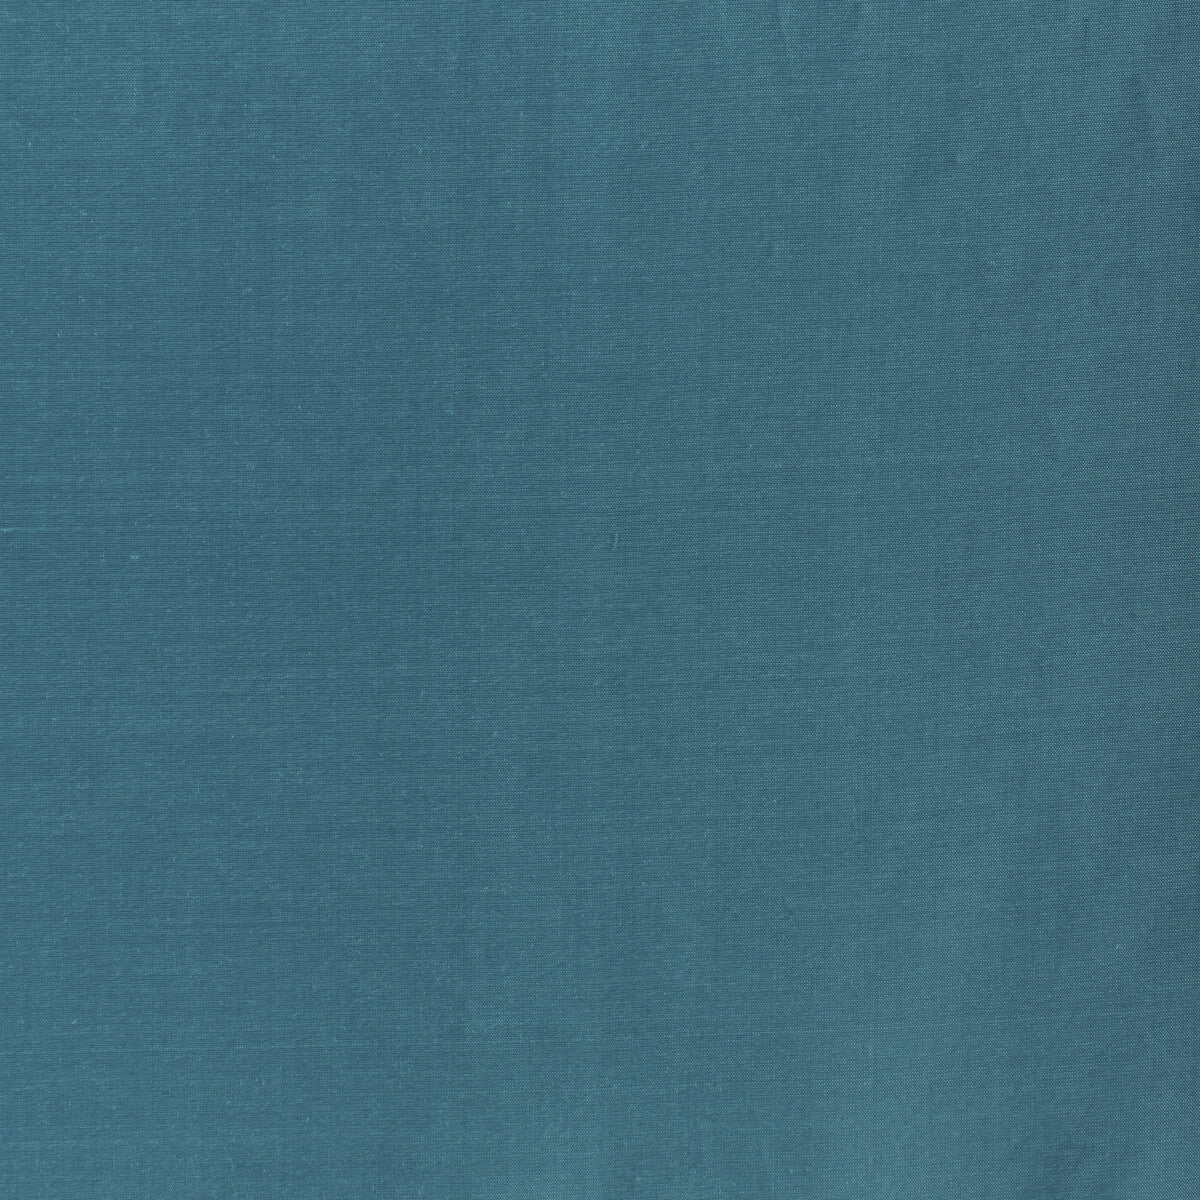 Kravet Design fabric in 4070-1511 color - pattern 4070.1511.0 - by Kravet Design